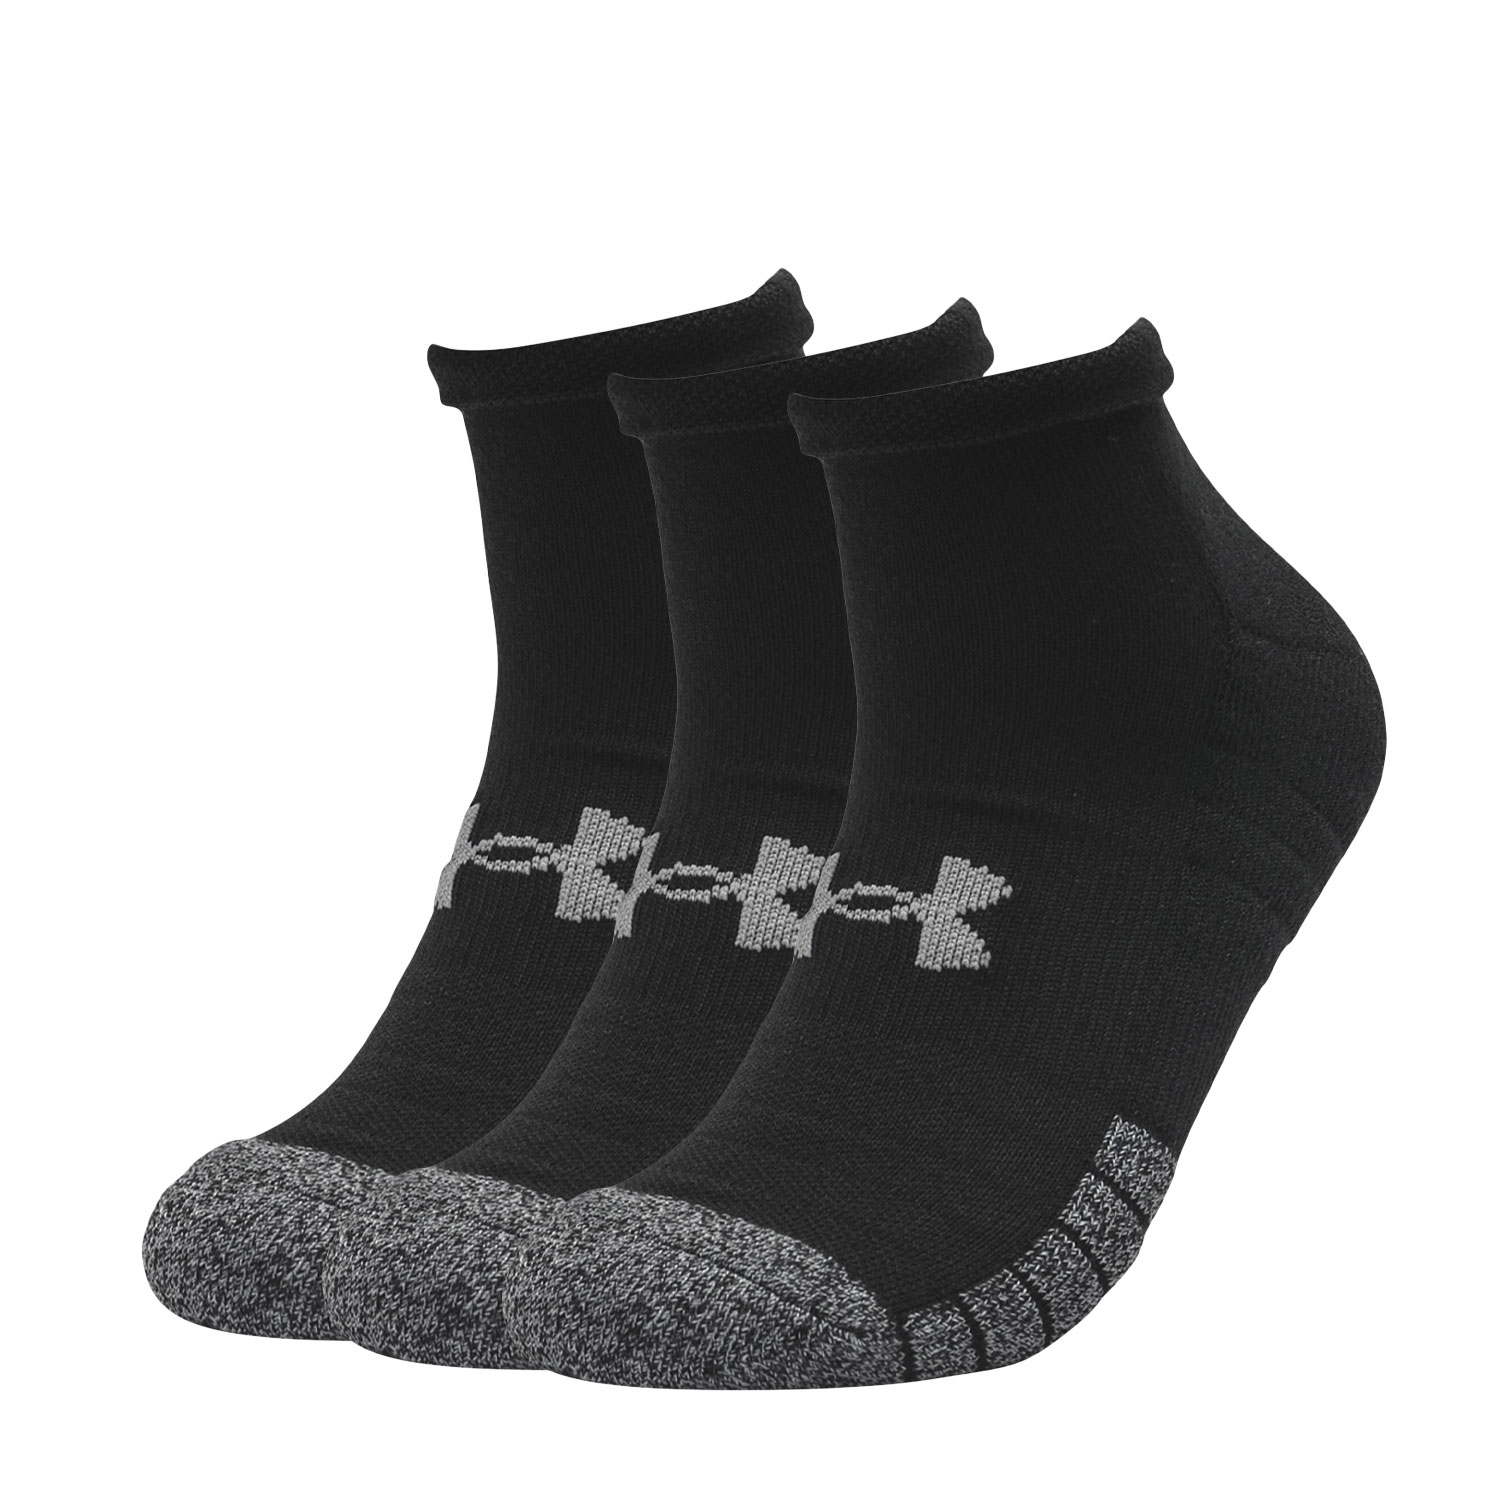 Under Armour HeatGear Logo Men's Running Socks - Black